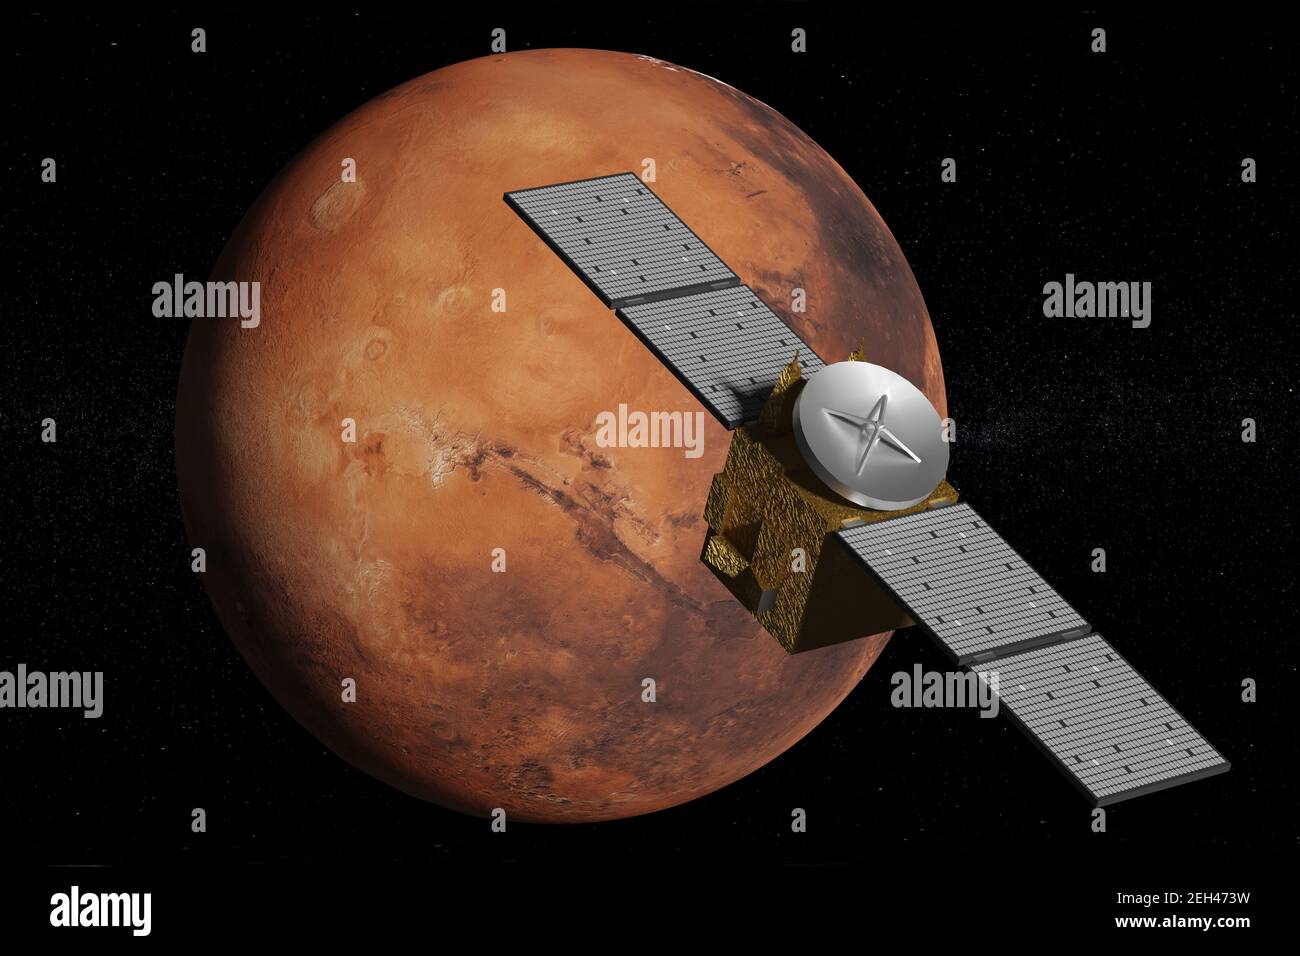 Sonda orbitando el planeta Marte. ilustración 3d. Foto de stock